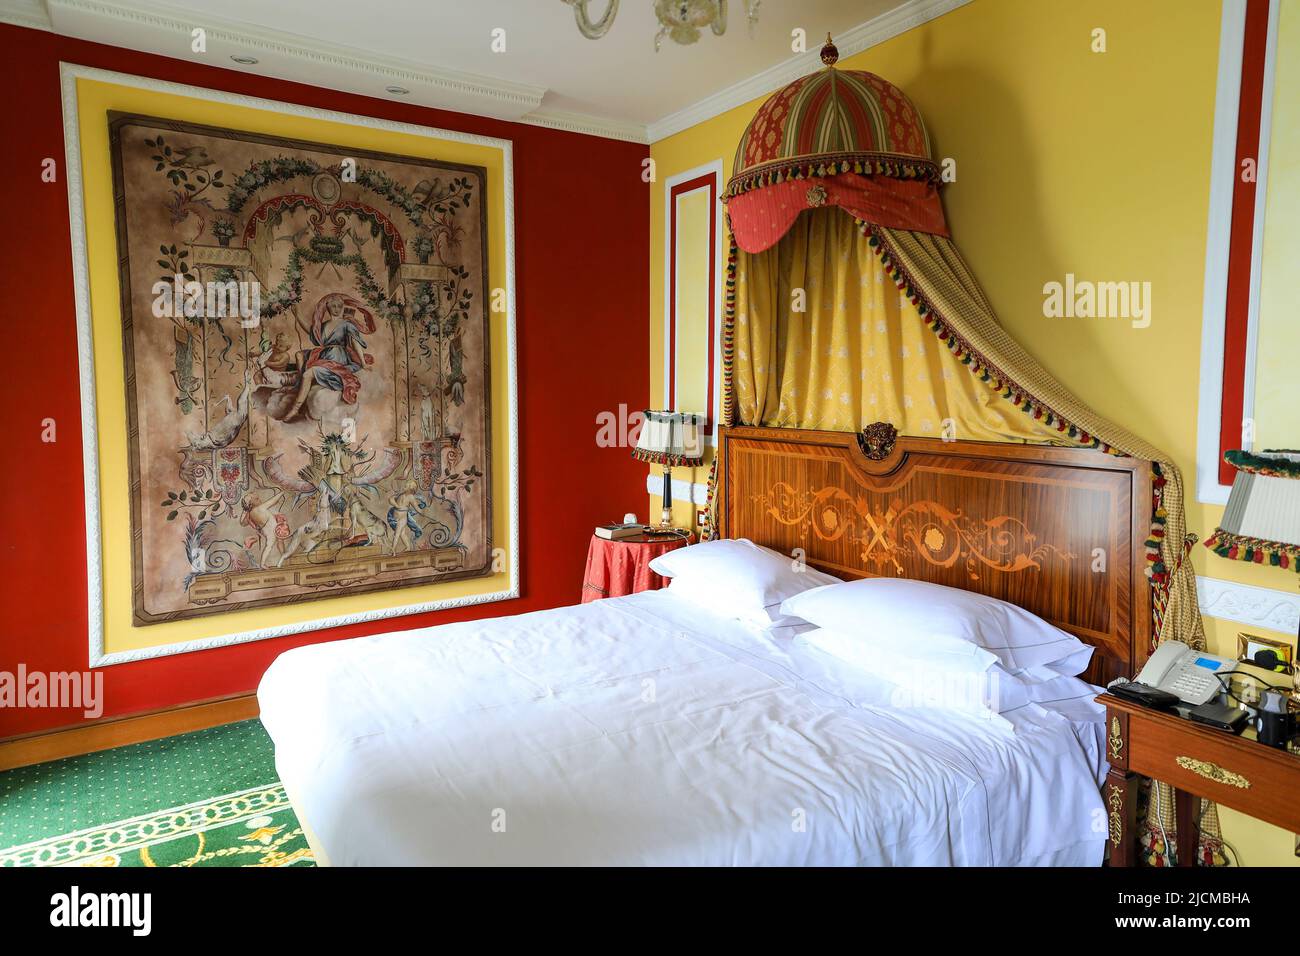 Una camera ornata all'interno del Grand Hotel des Iles Borromees, Stresa, Lago maggiore, Italia Foto Stock